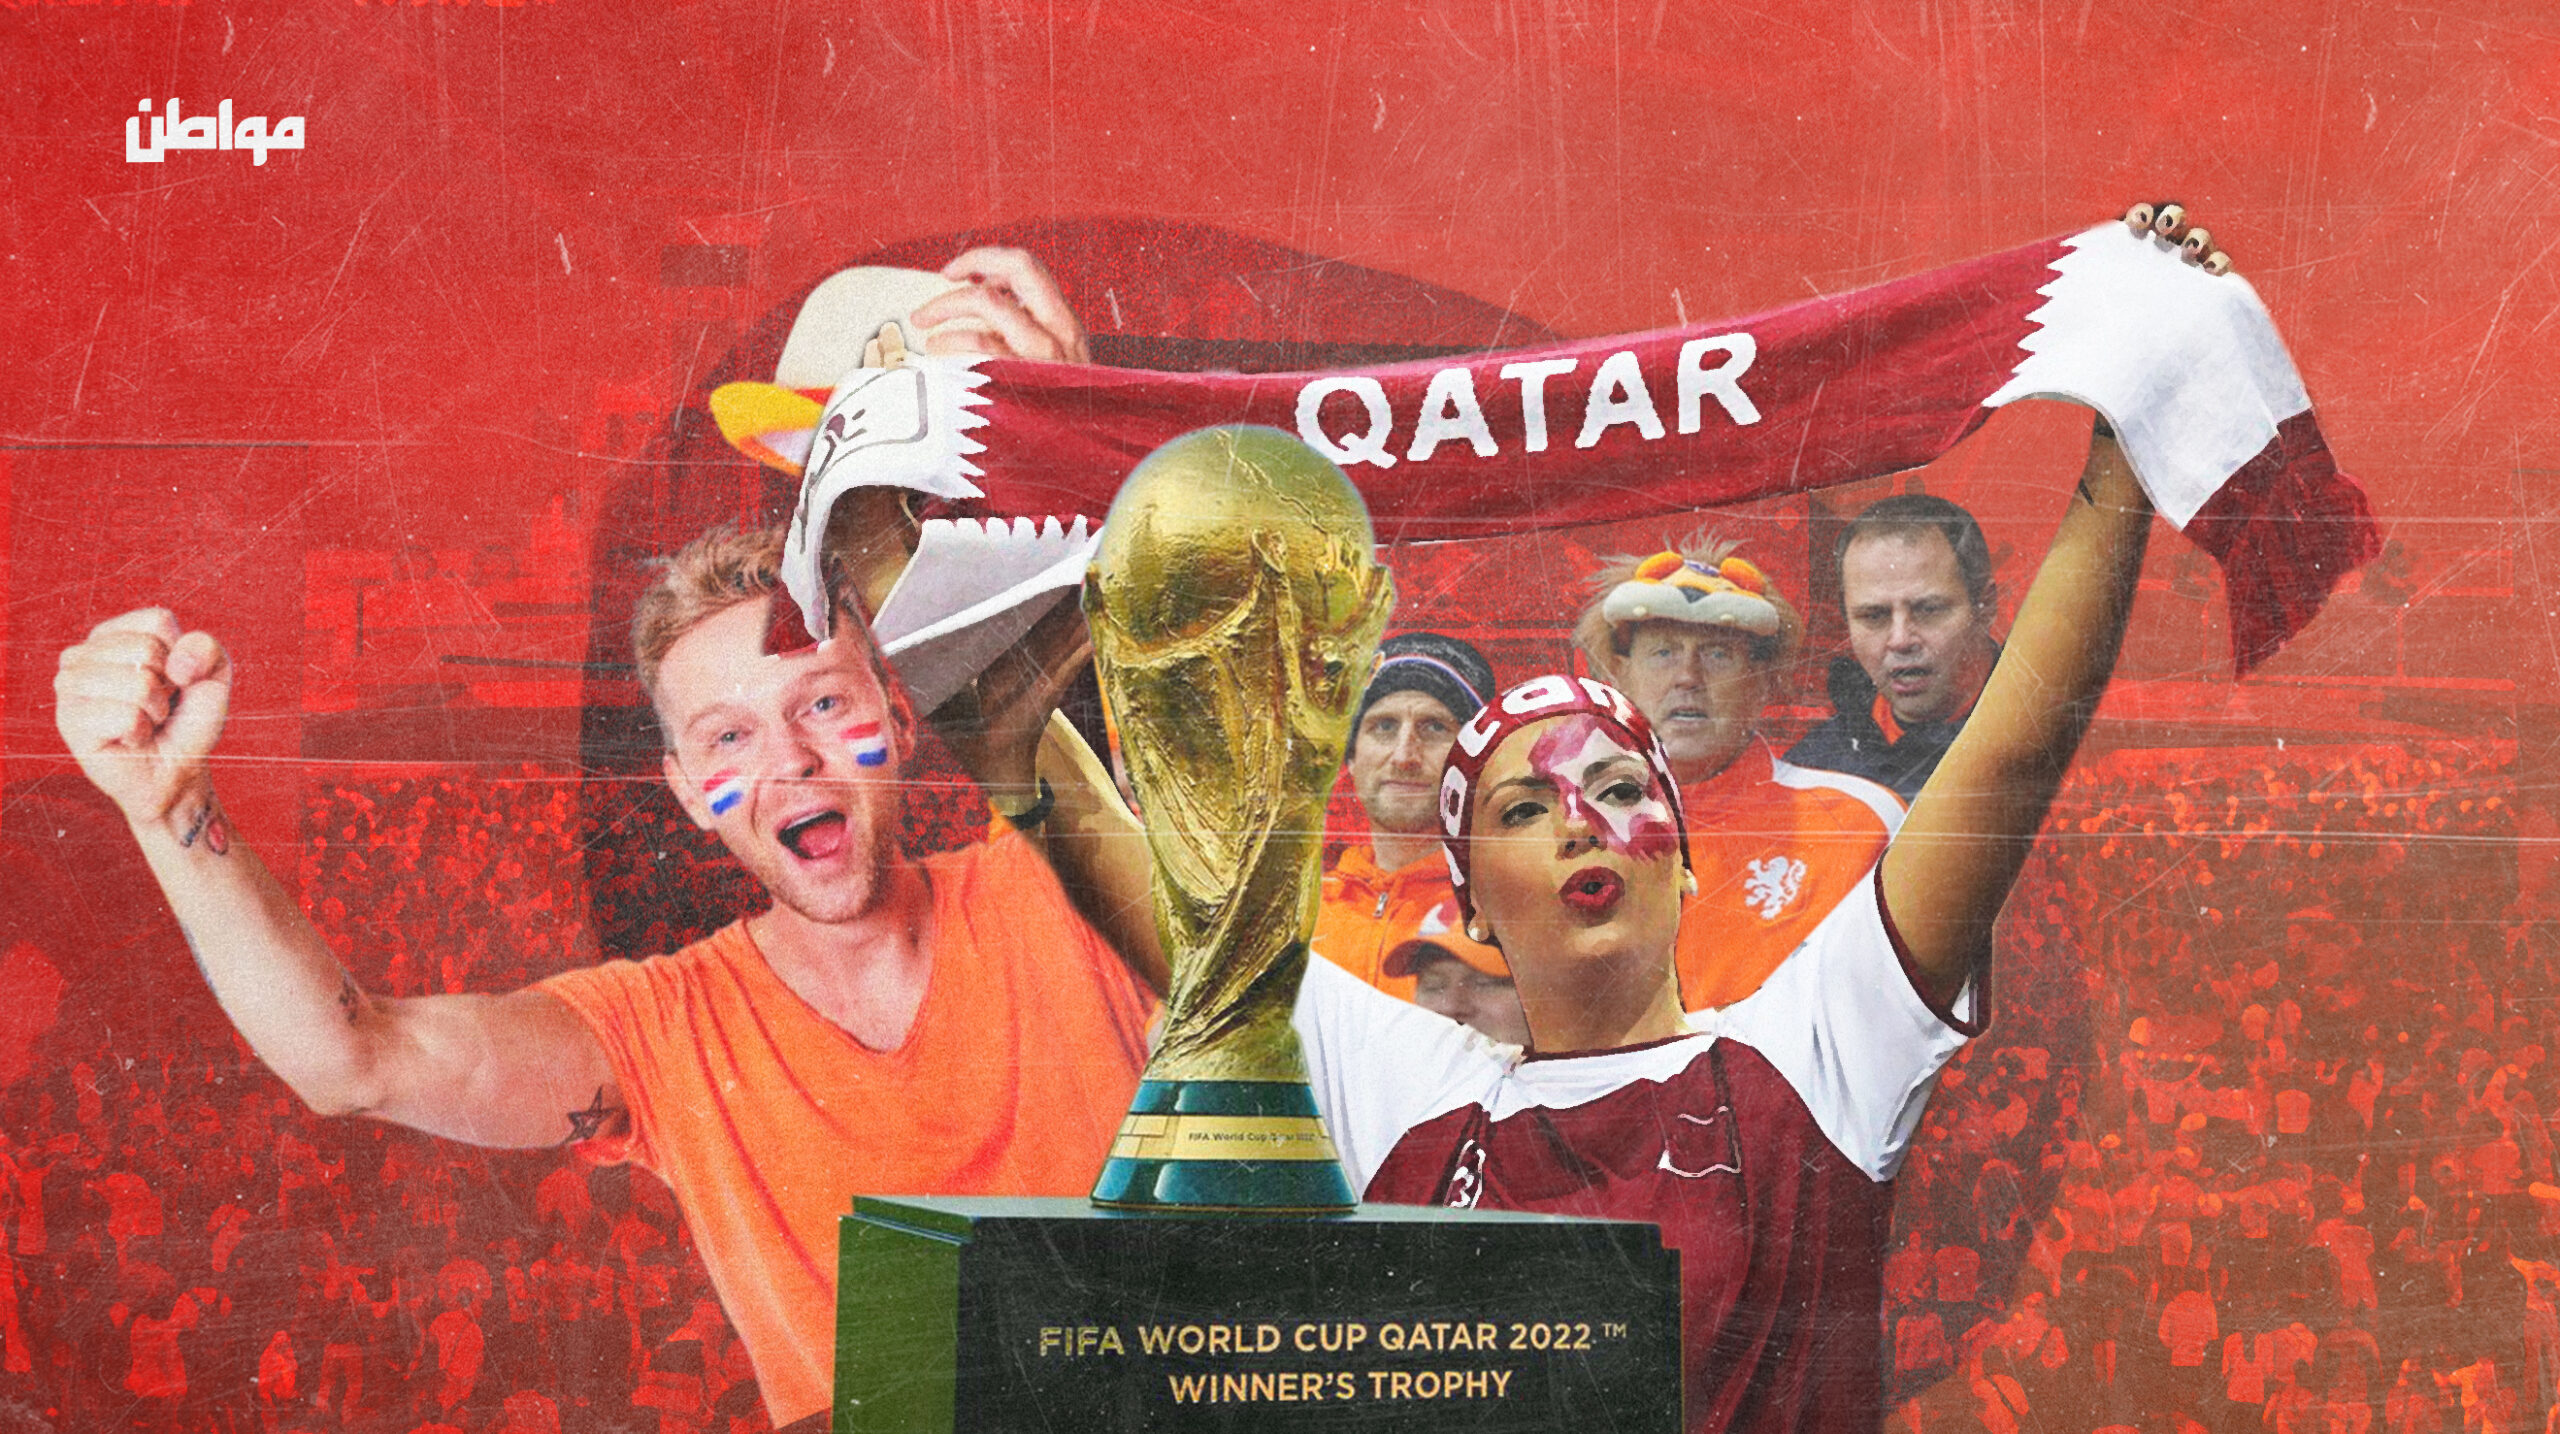 منذ أسابيع على انطلاق المونديال الكروي في دولة قطر الـ 20 من نوفمبر الحالي، تشهد العاصمة القطرية الدوحة احتفالات جماهيرية بكأس العالم